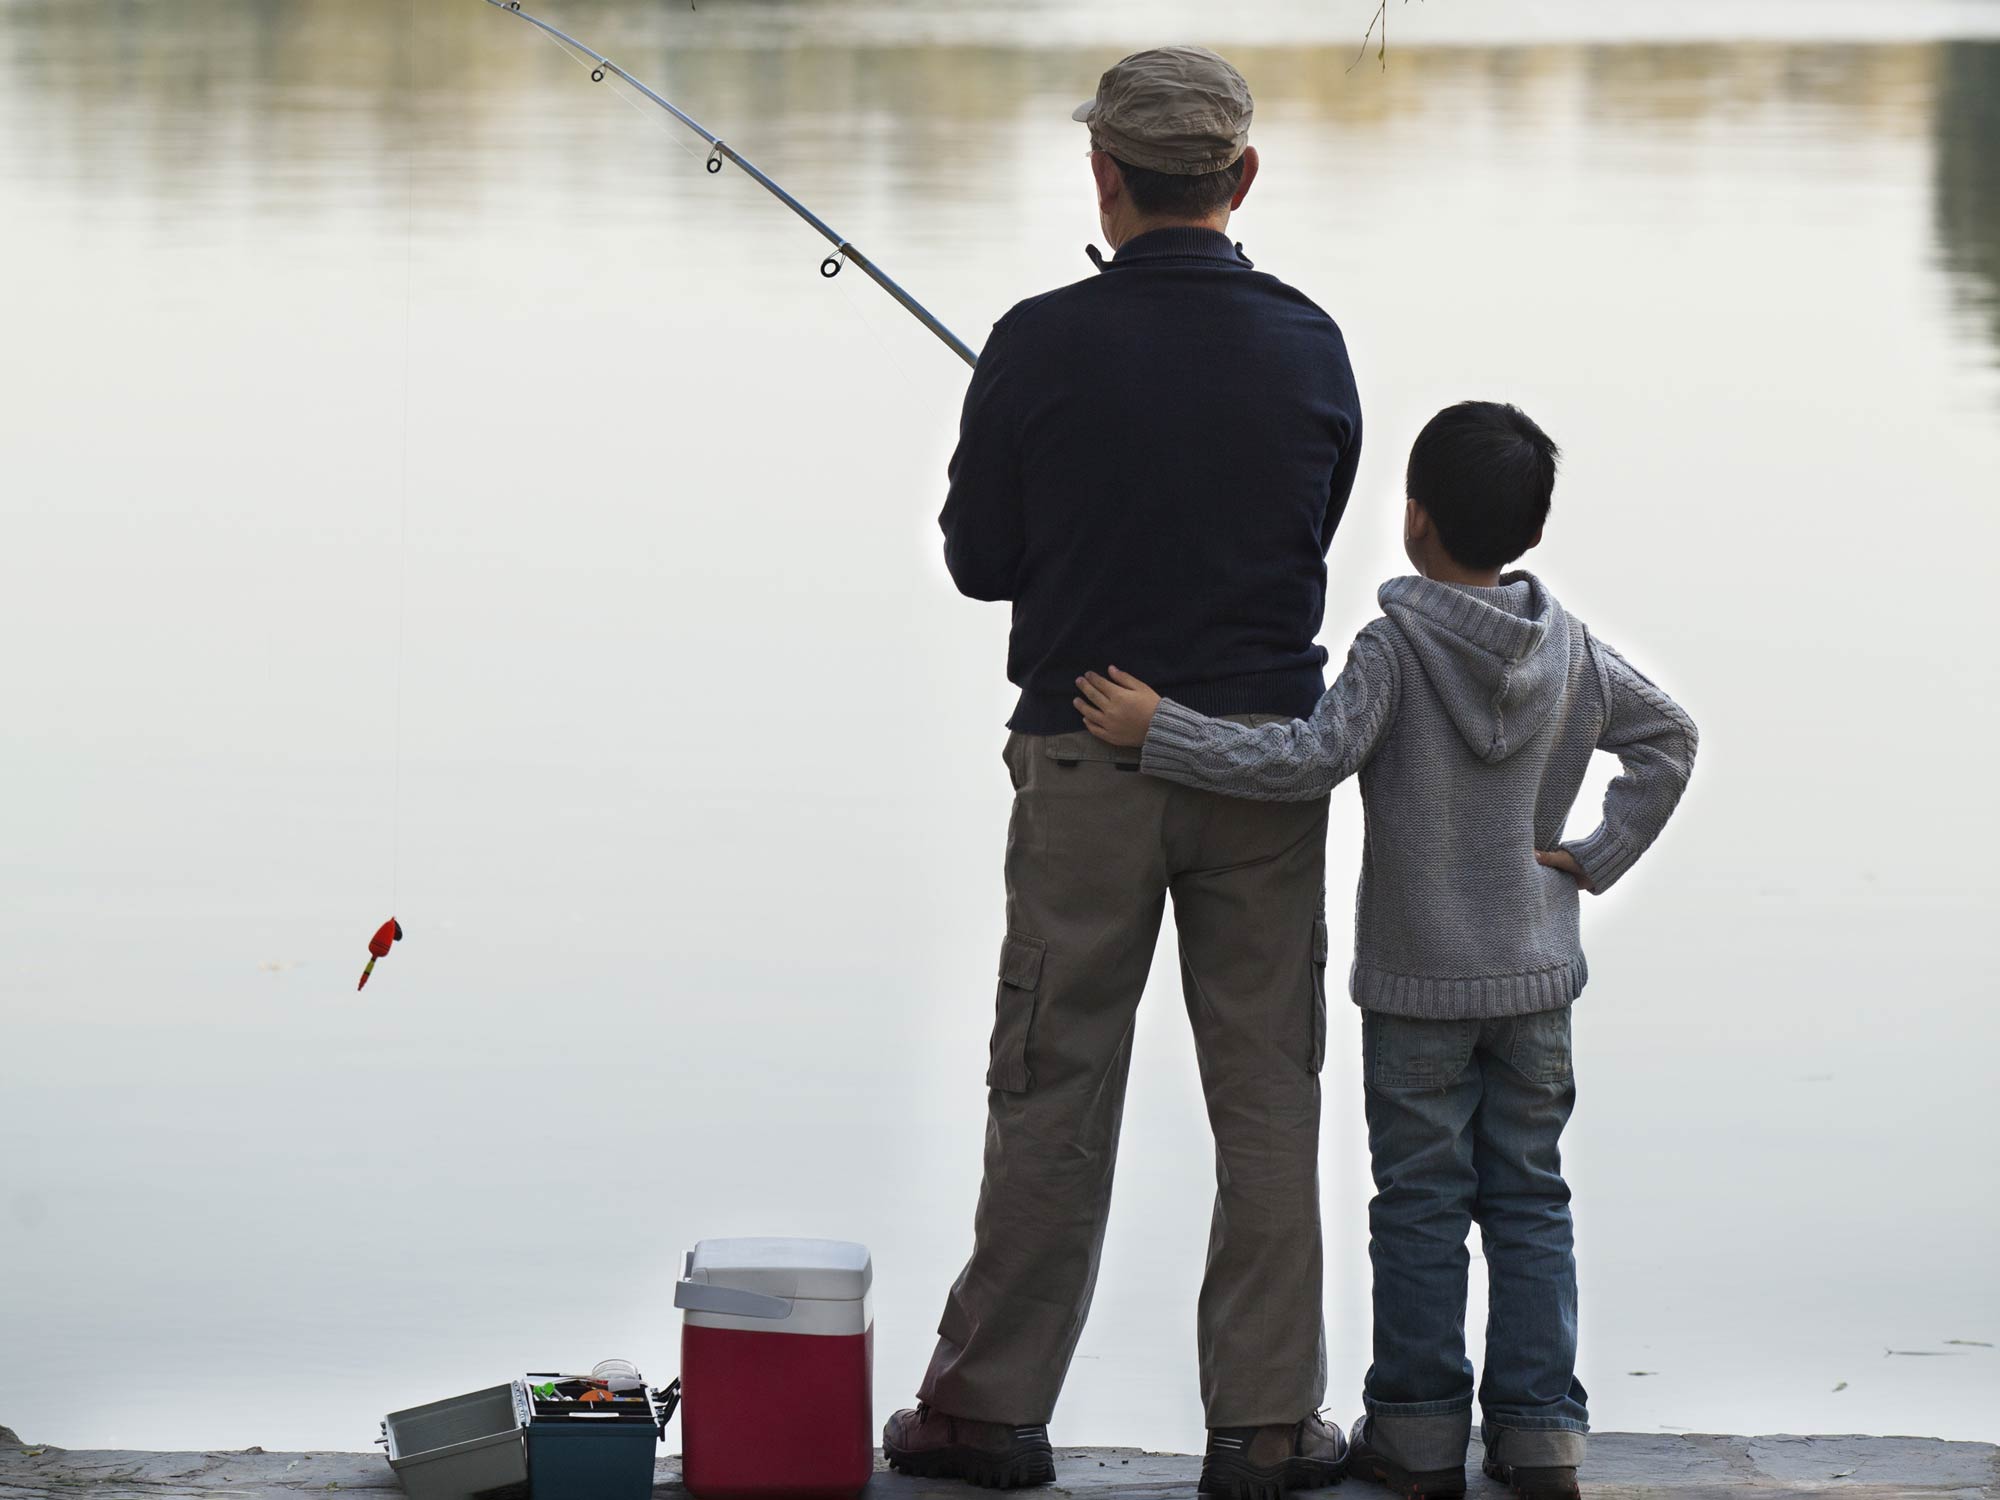  Homem e um rapaz pescando da costa juntos